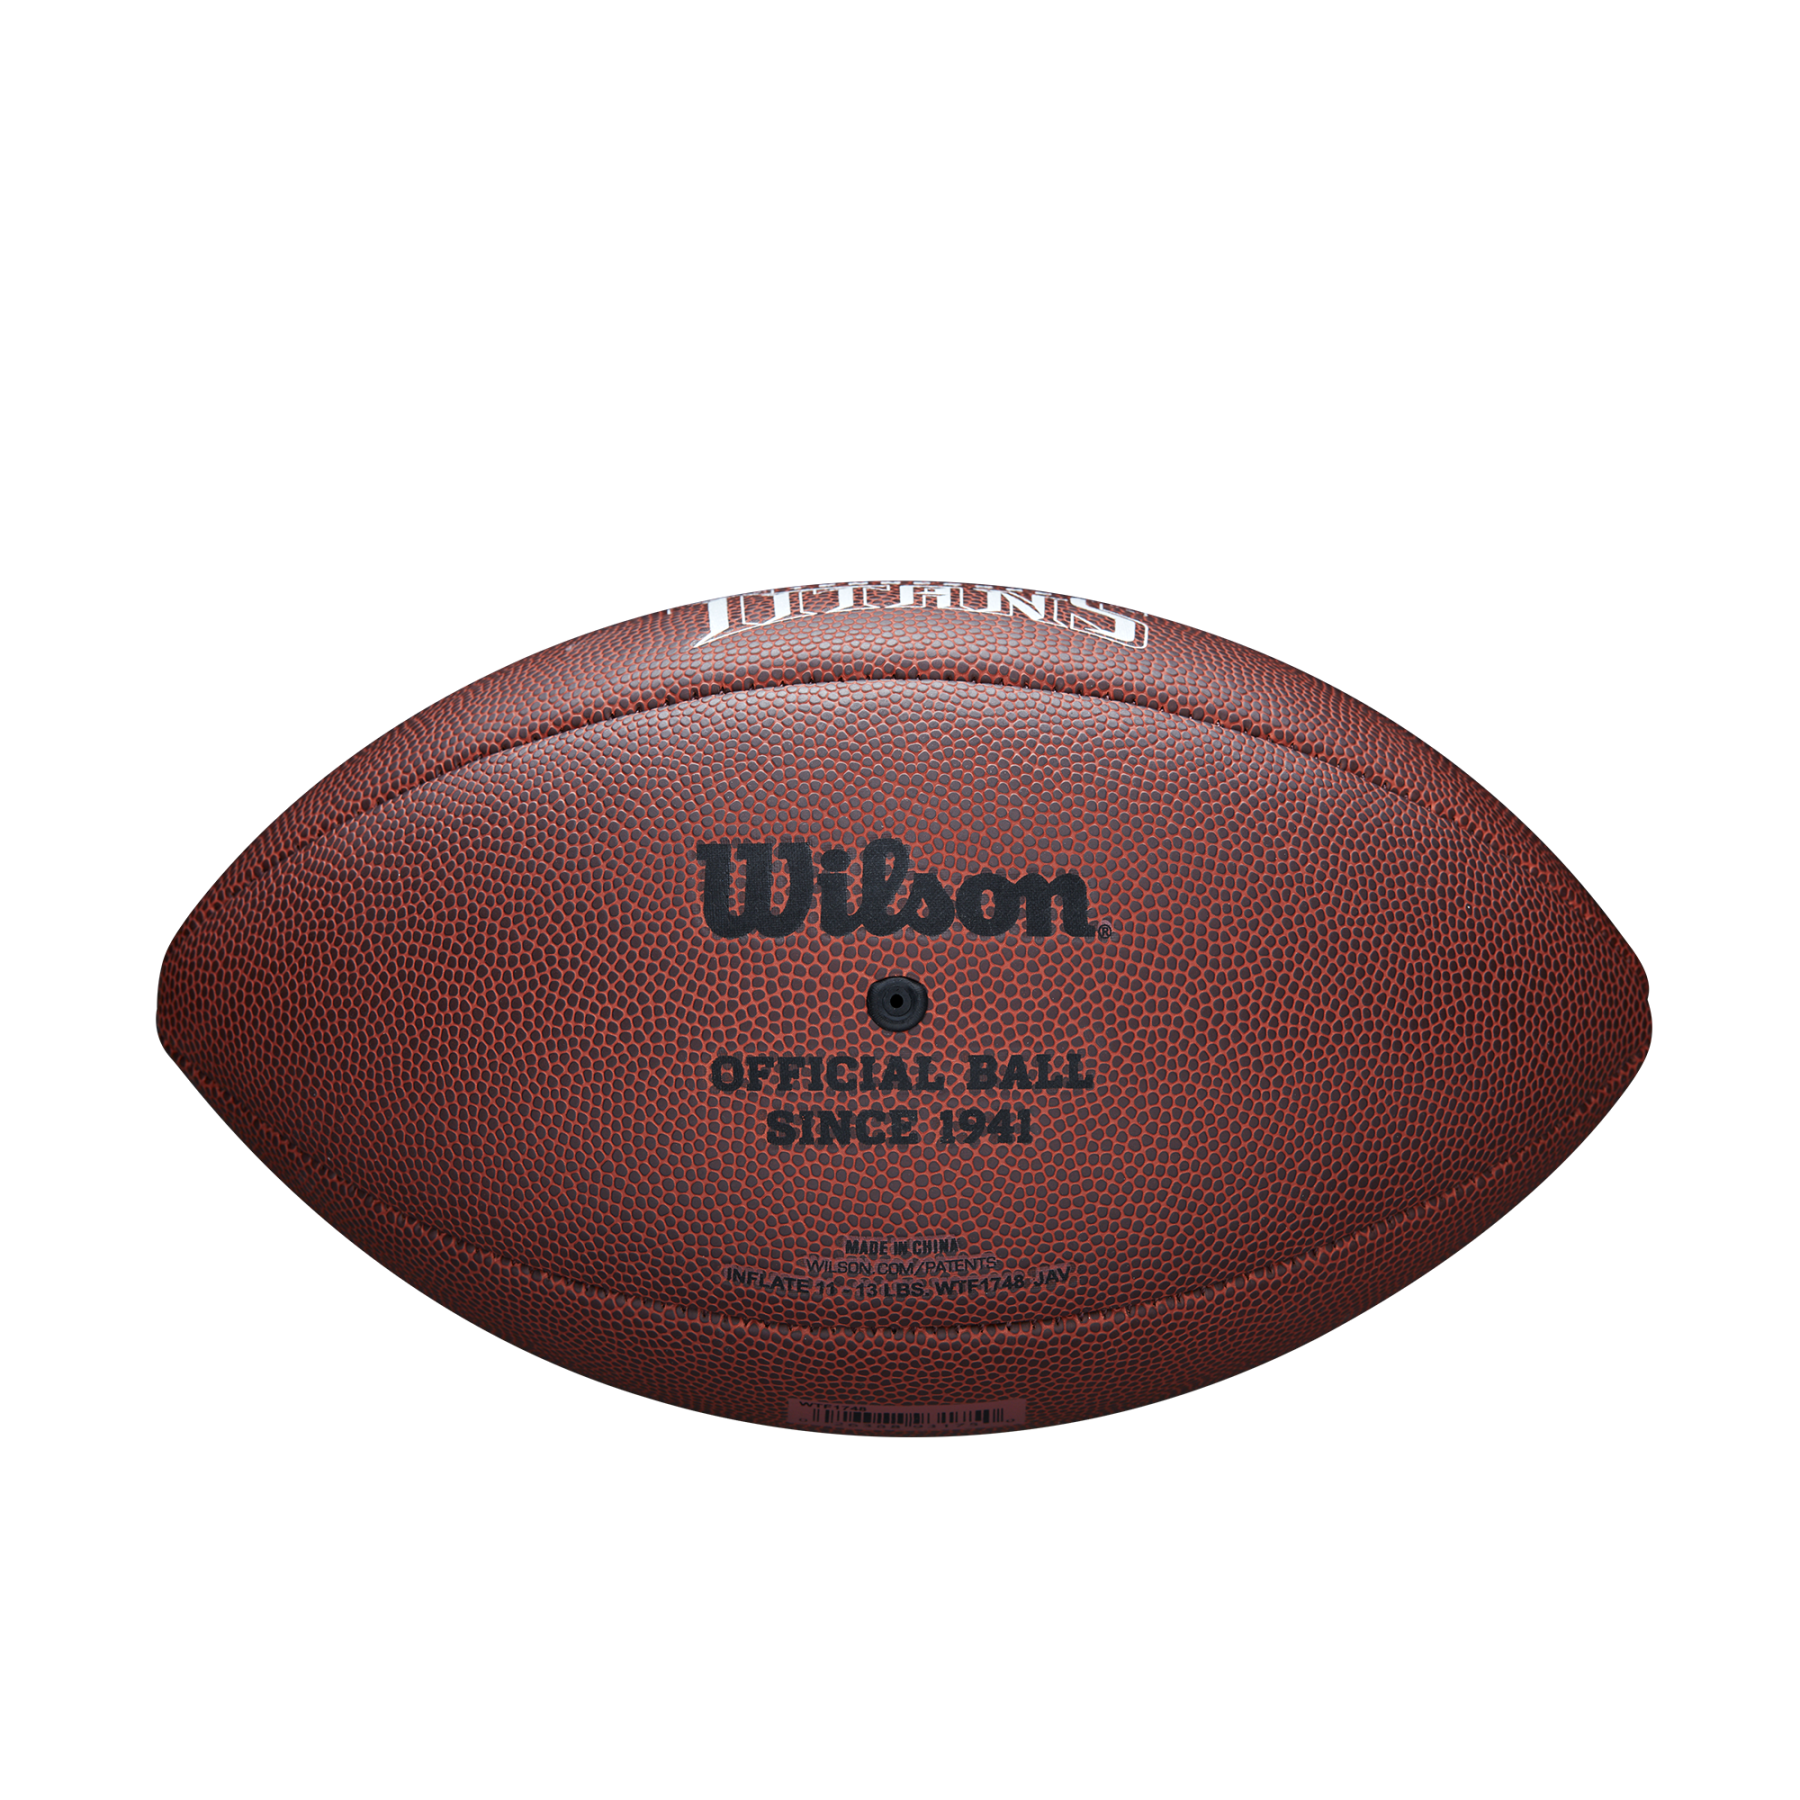 Bola Wilson Titans NFL com licença